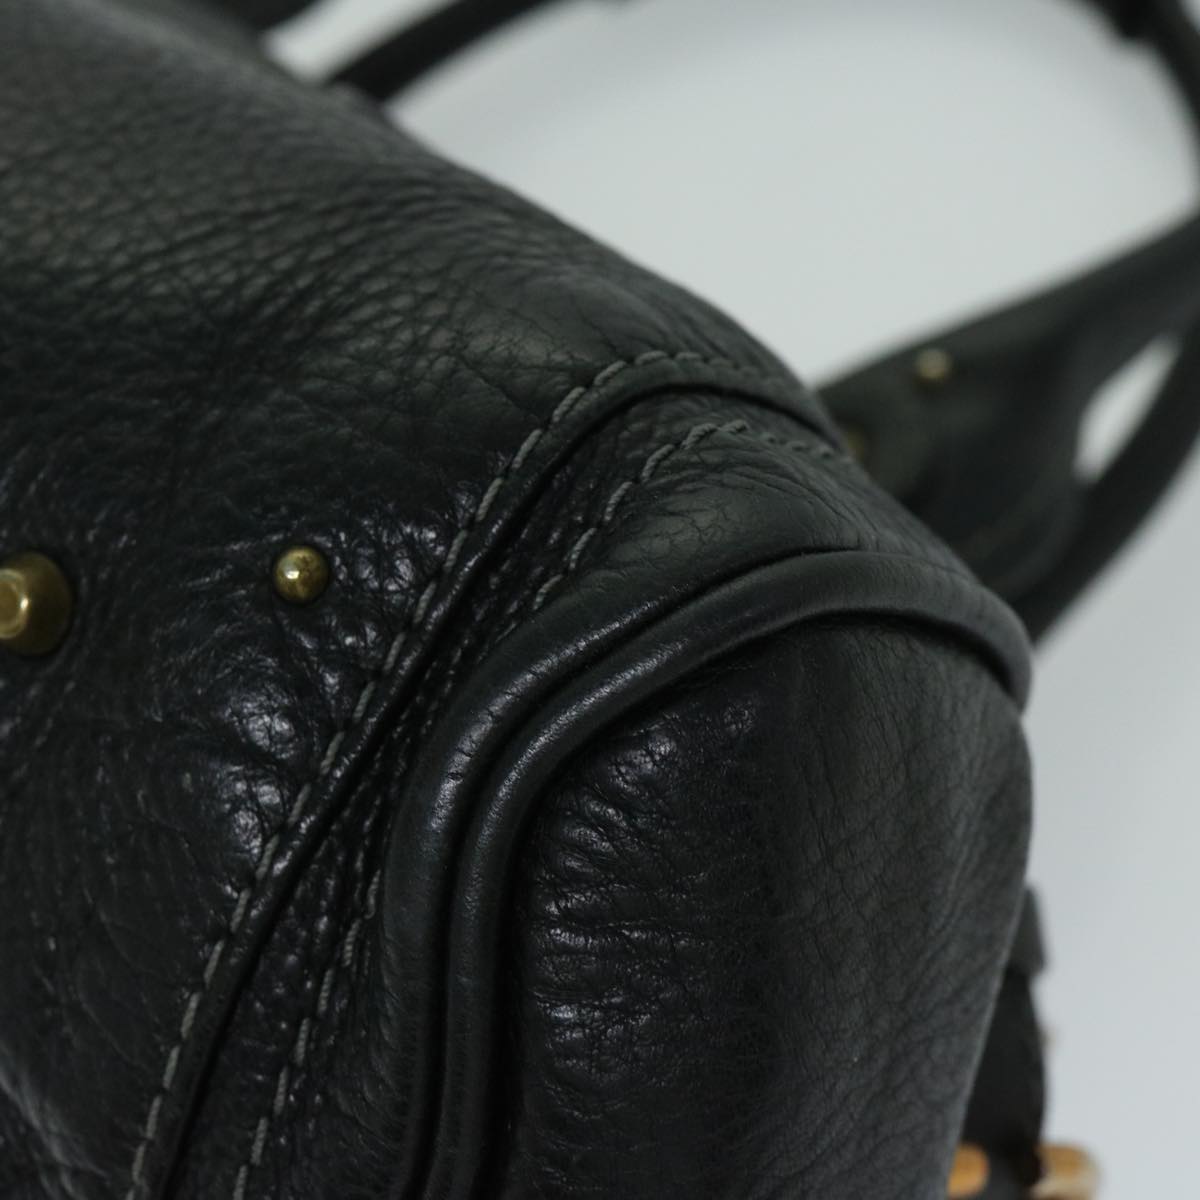 Chloe Paddington Shoulder Bag Leather Black Auth fm3249